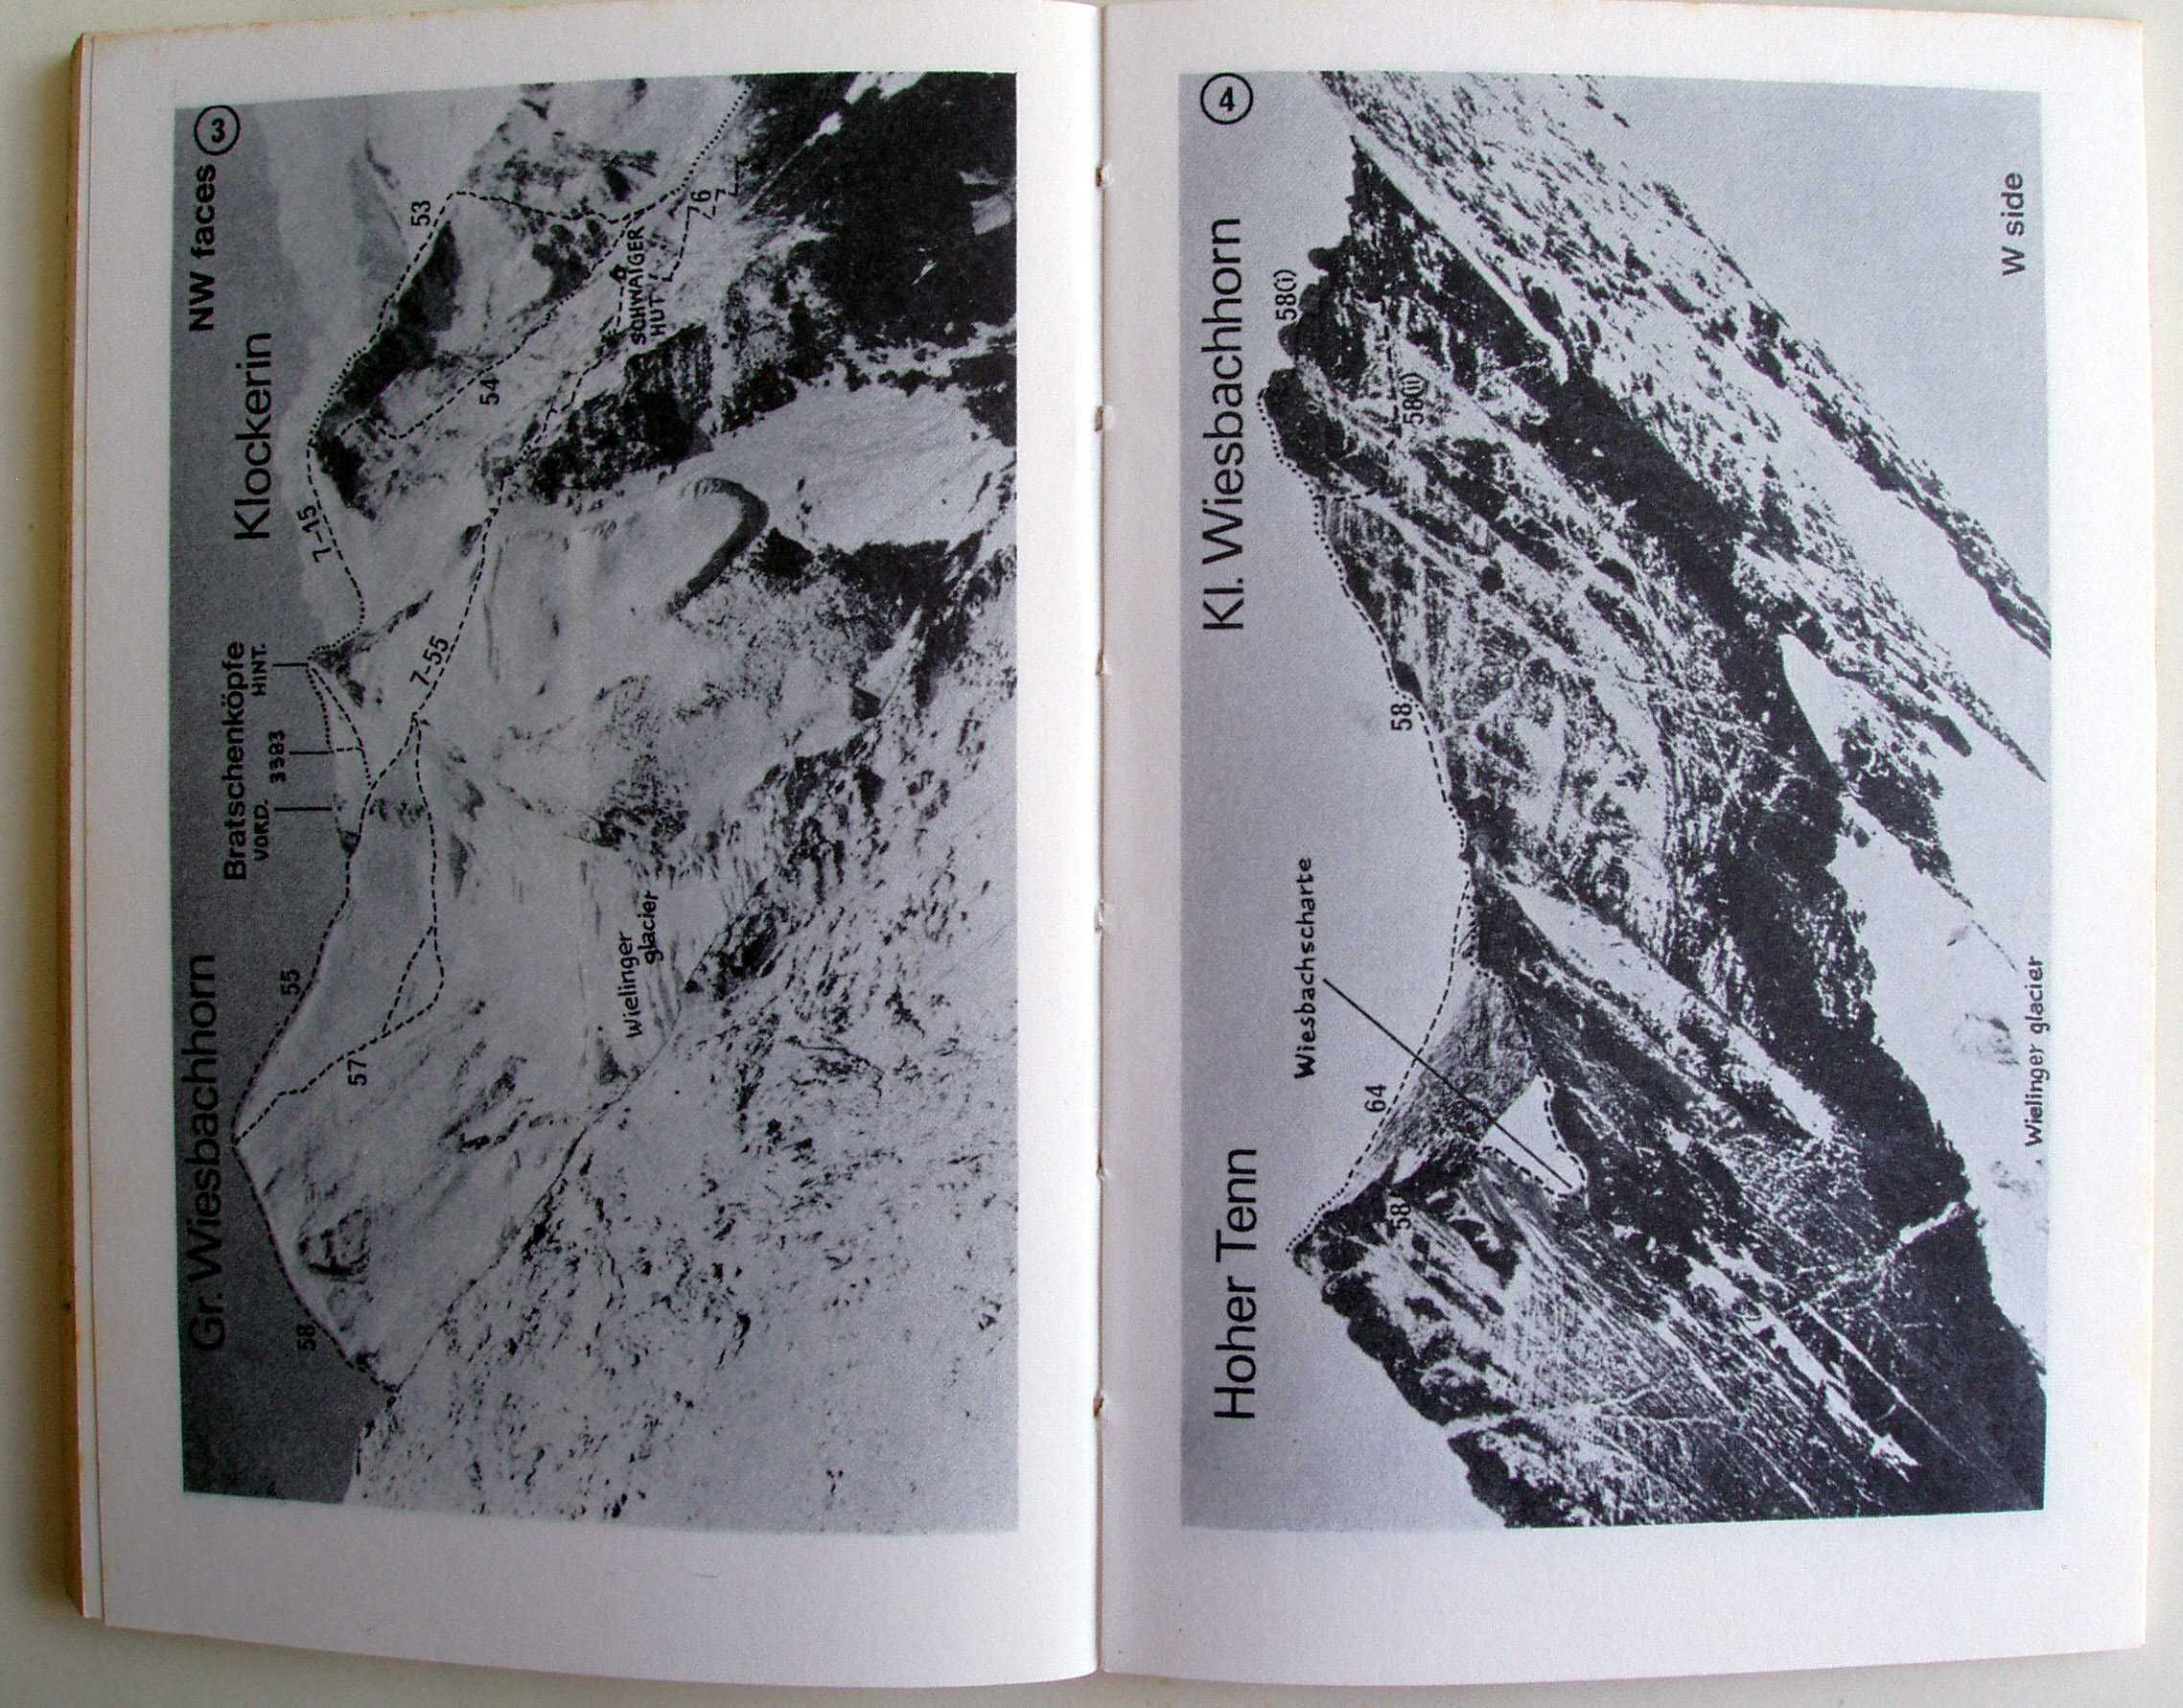 Glockner Region by Eric Roberts - przewodnik alpinistyczny